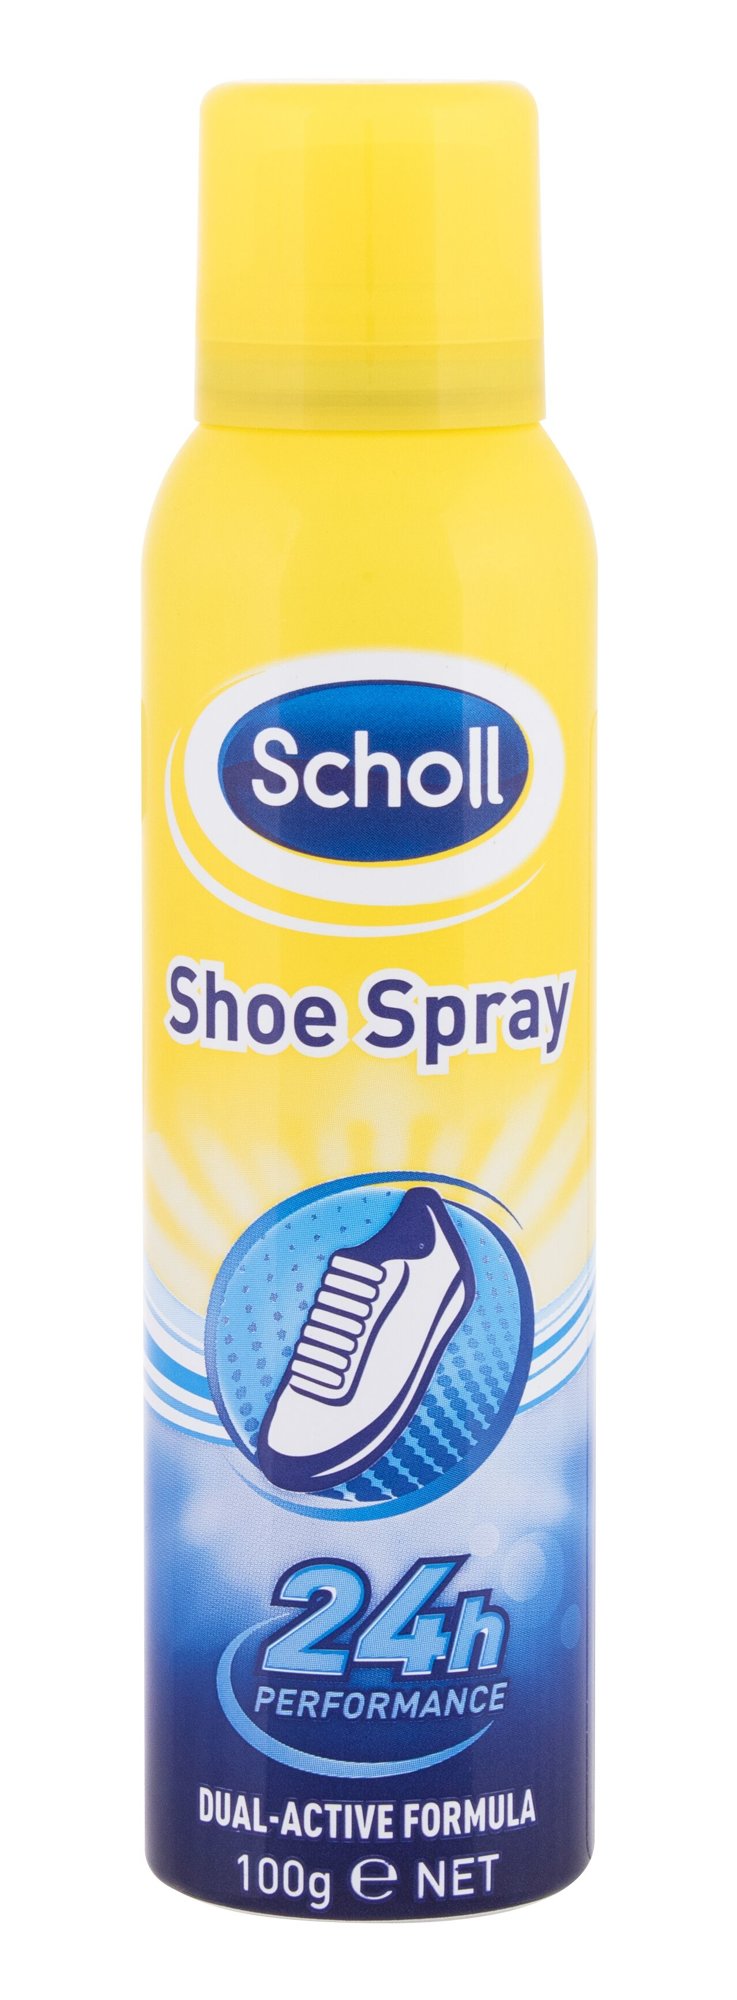 Scholl Shoe Spray Kojų purškiklis